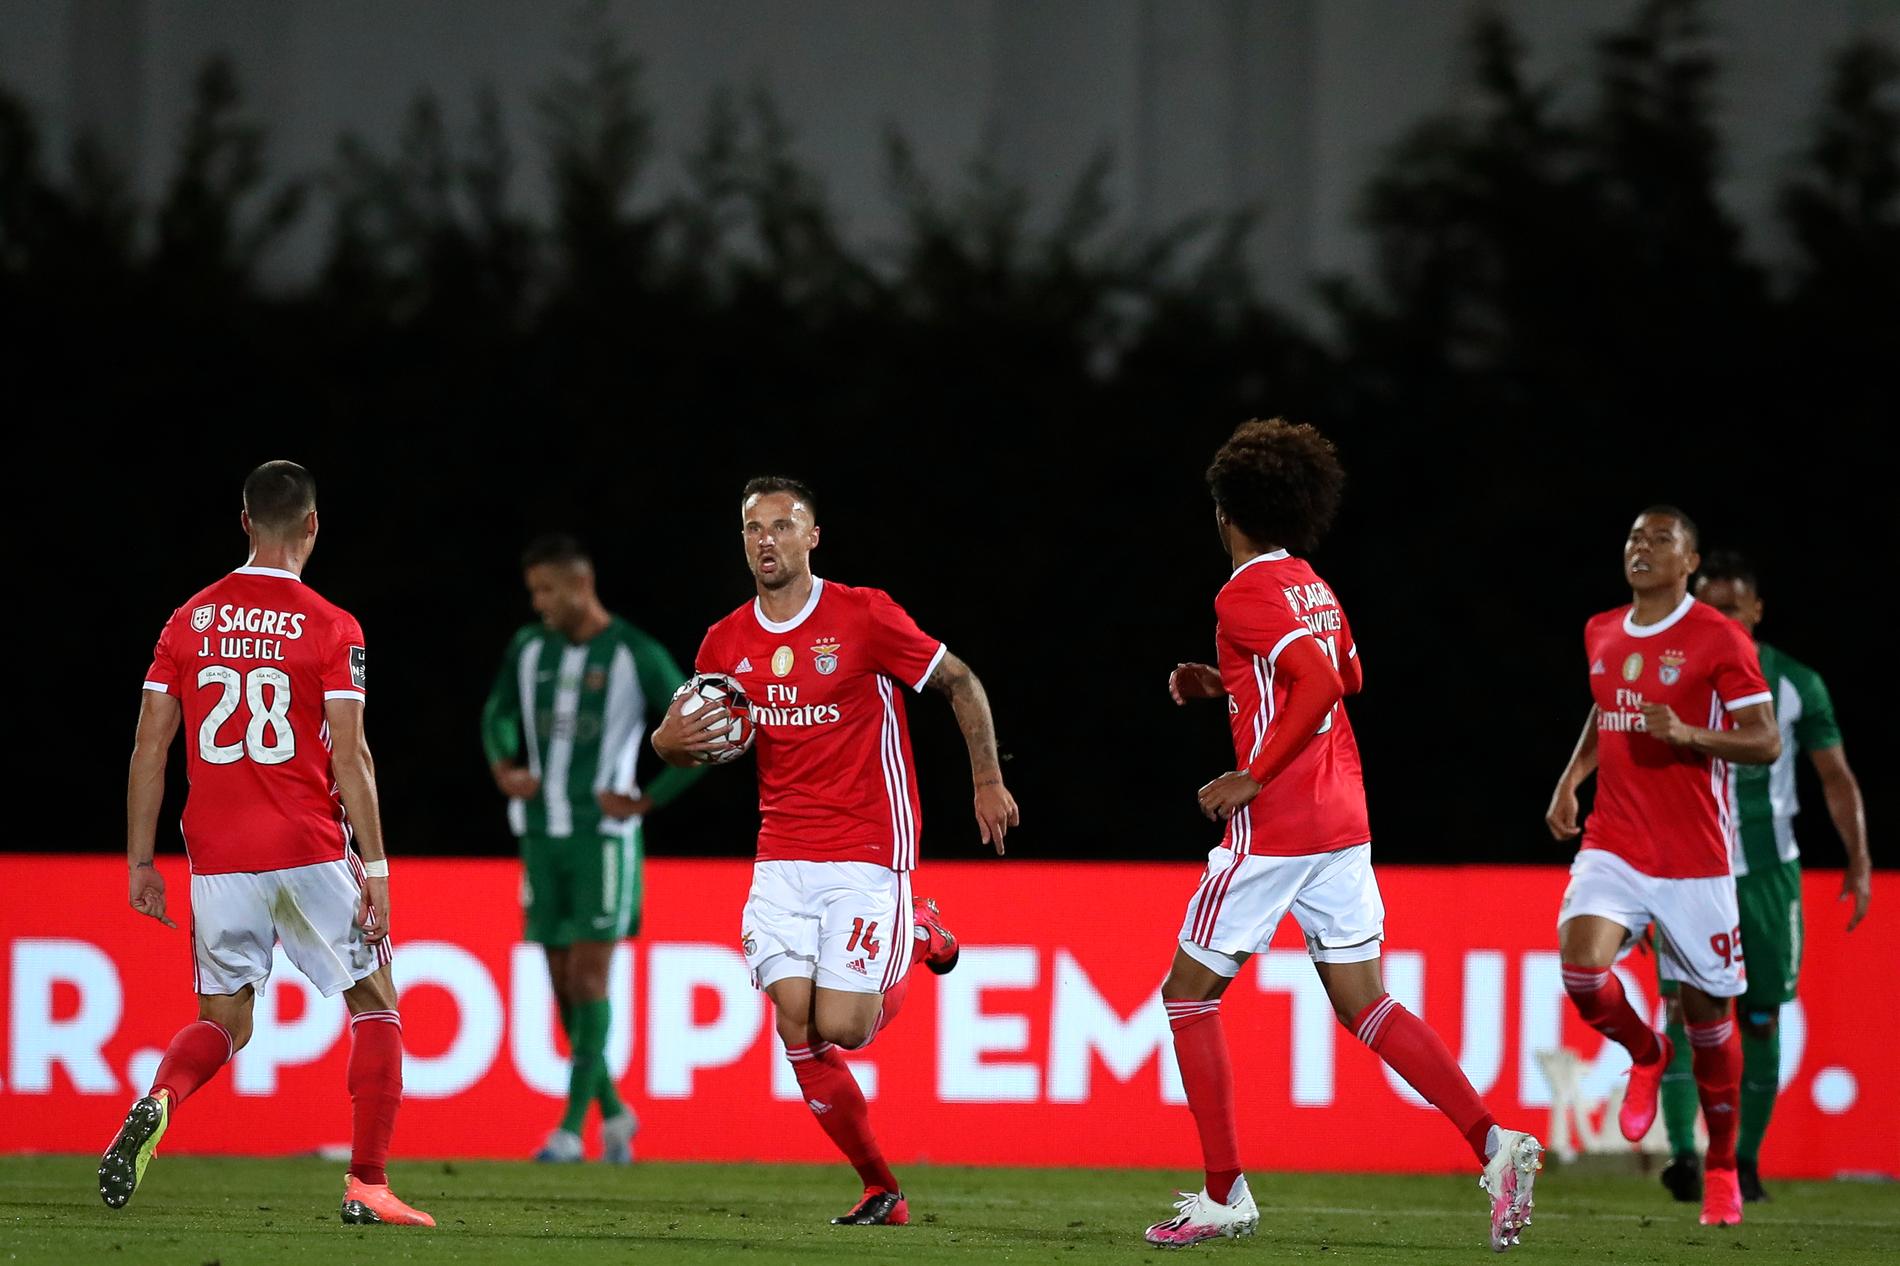 Benficas ordförande anklagas för att ha undanhållit mer än 6 miljoner kronor av klubbens pengar från beskattning. Arkivbild.